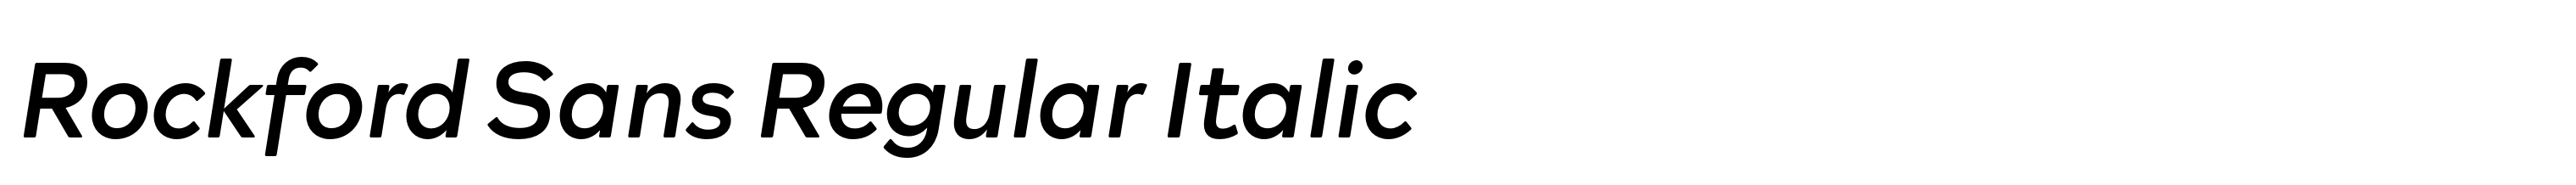 Rockford Sans Regular Italic